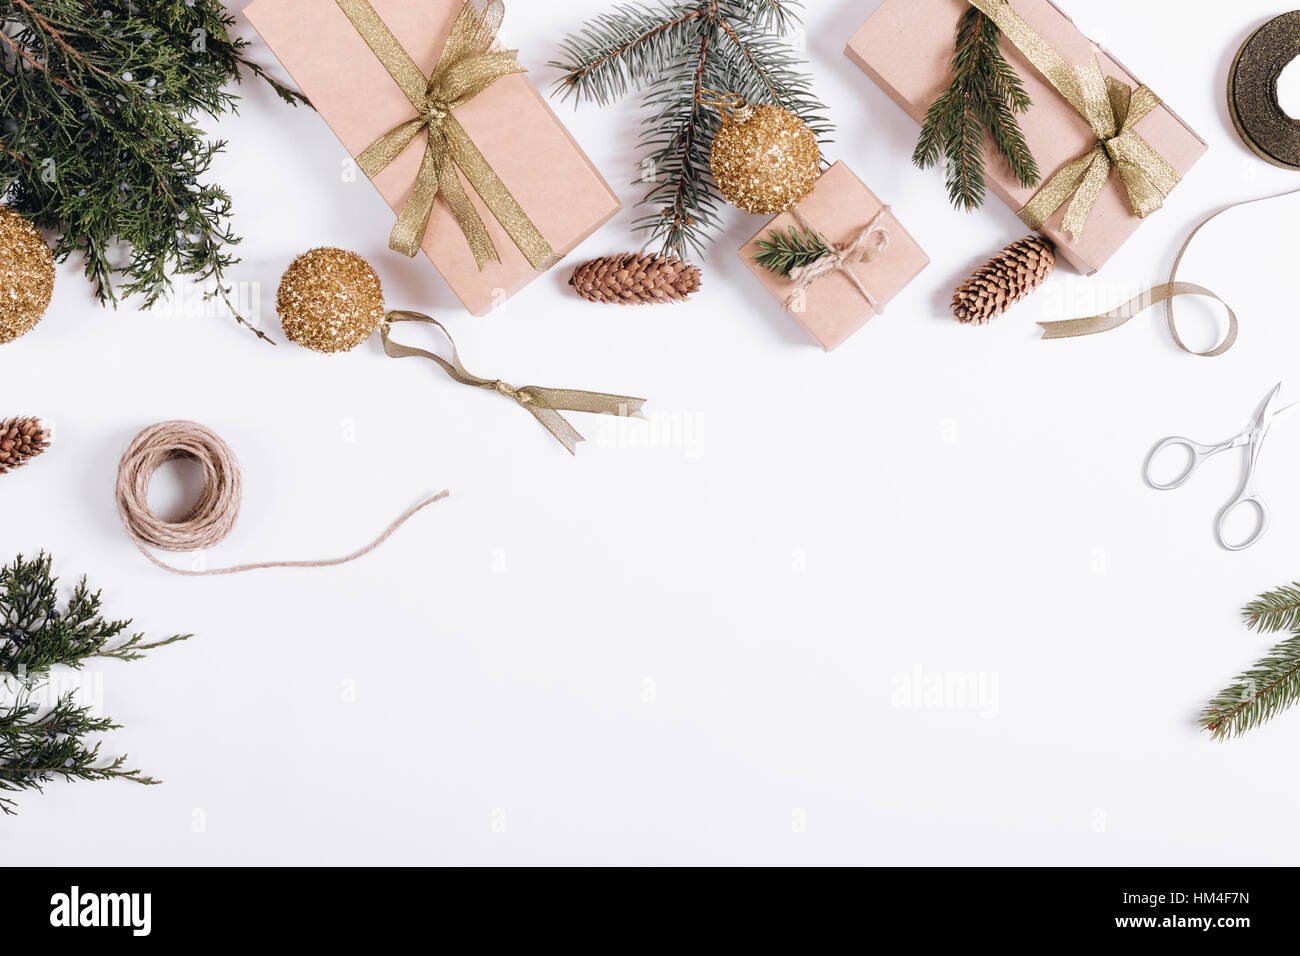 Weihnachts-Dekorationen auf weißem Hintergrund: Zweige der Tanne, Geschenkboxen, Bänder, Spielzeug, Seil, Schere Stockfoto